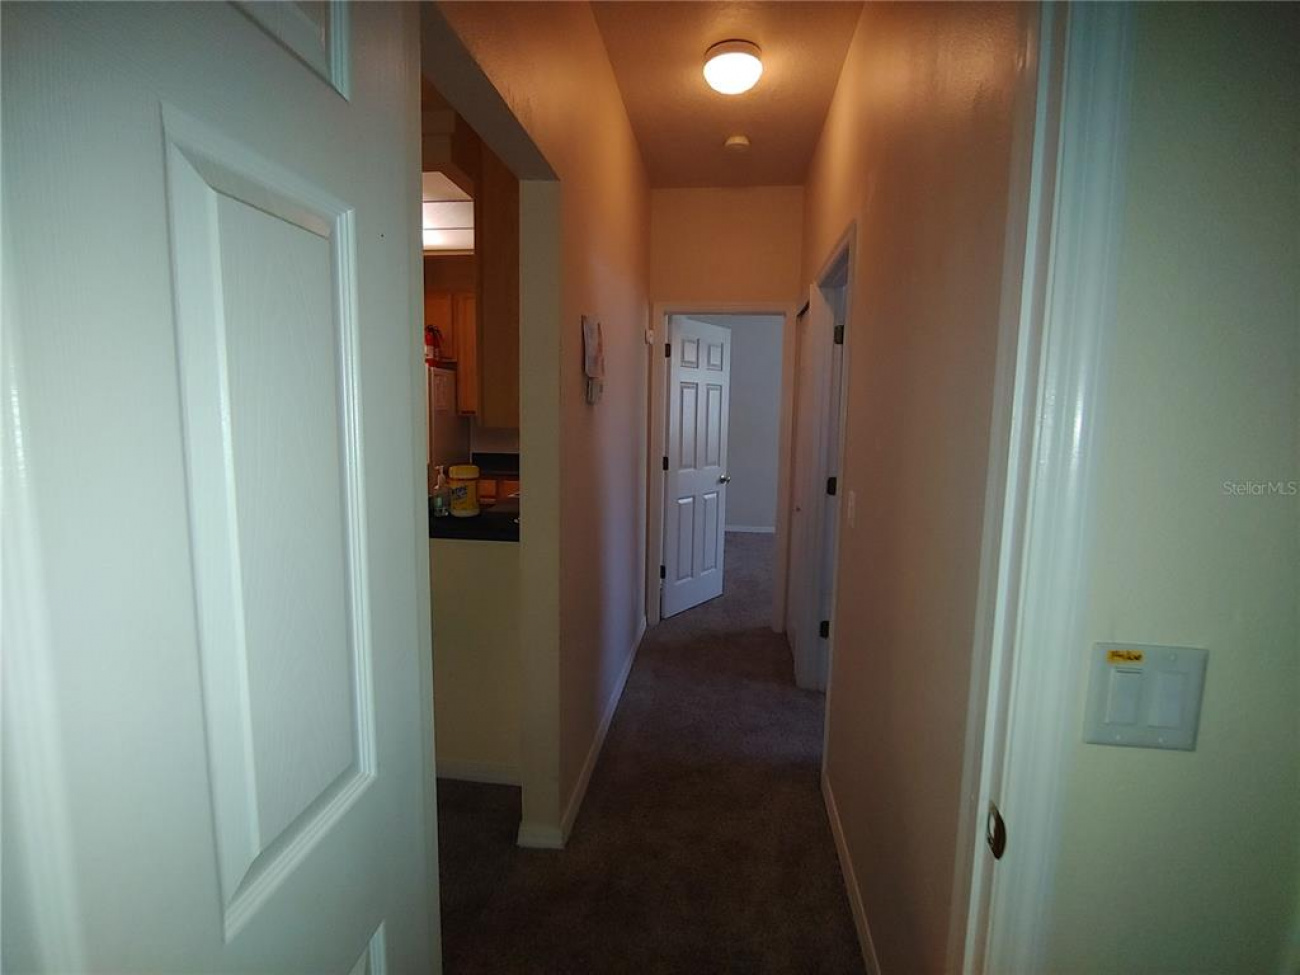 Hallway Between Guest Bedrooms and Guest Bathroom